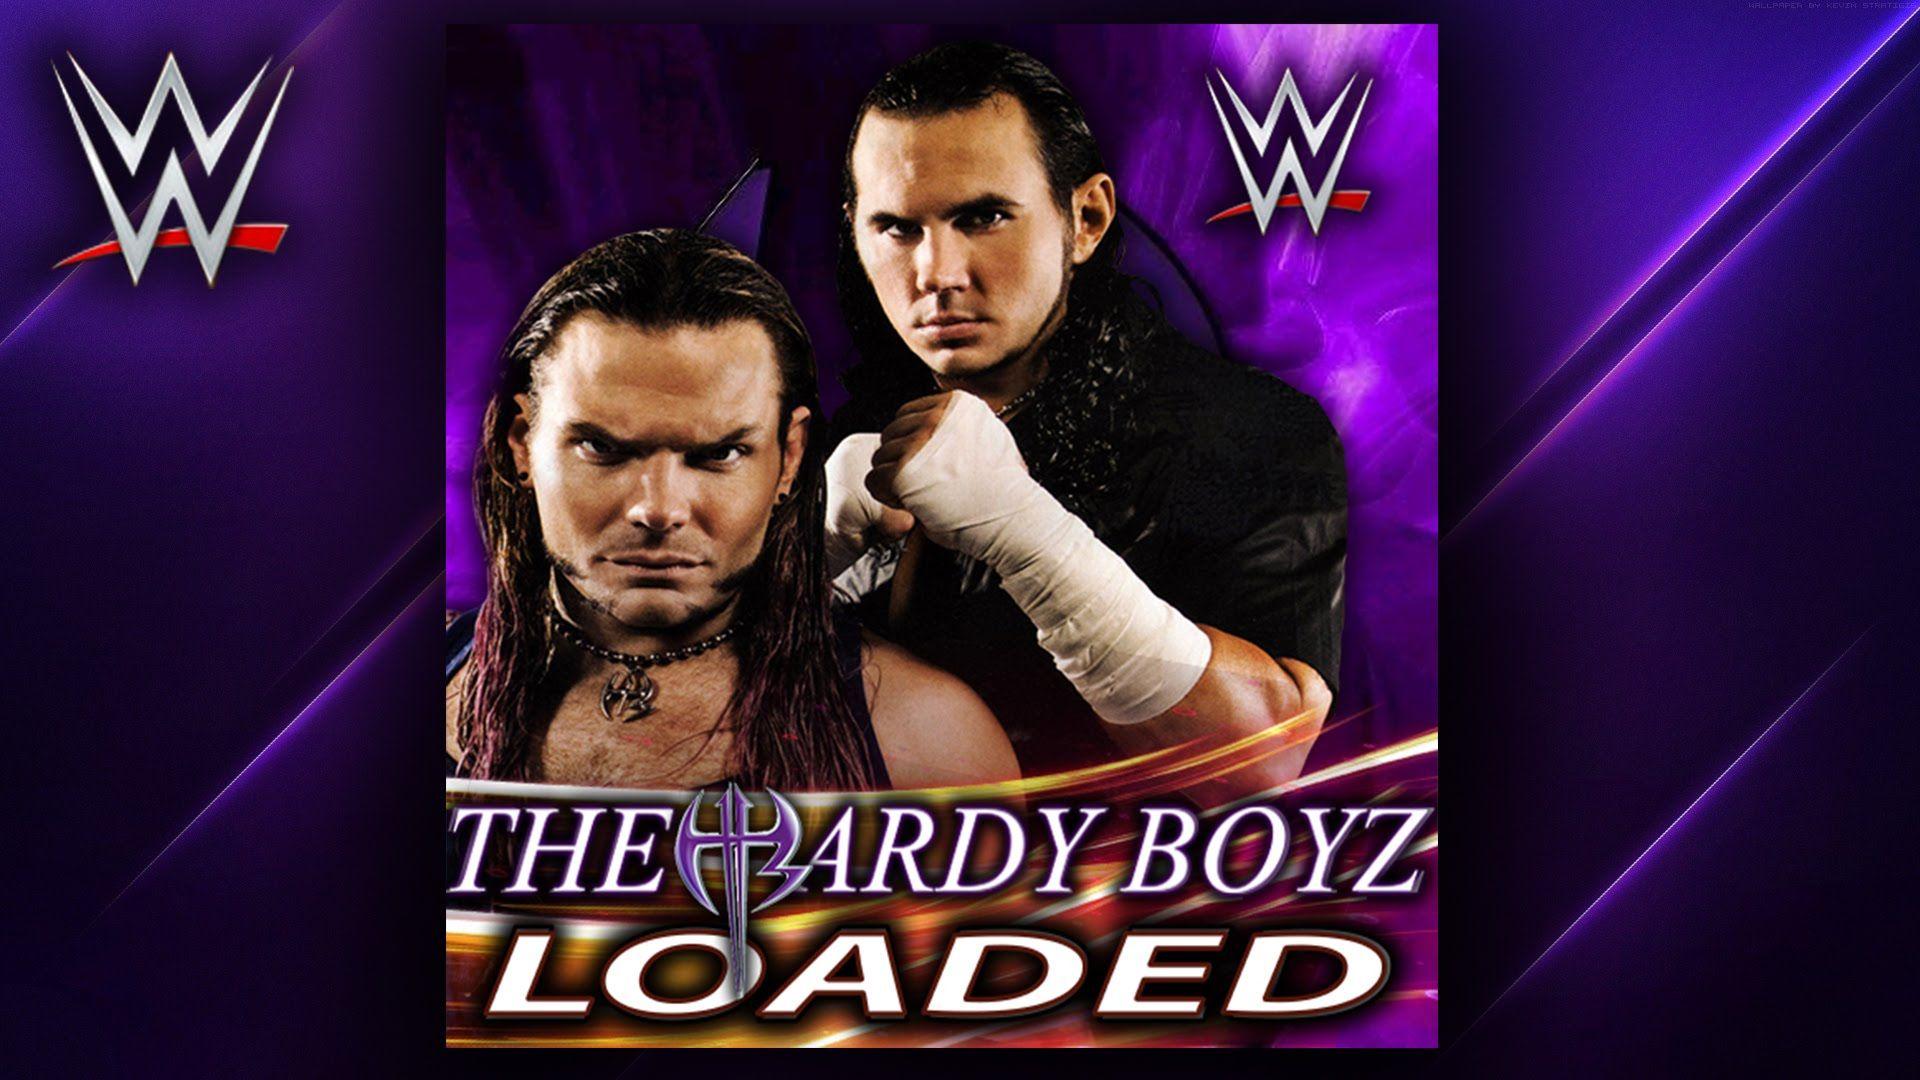 WWE: Loaded